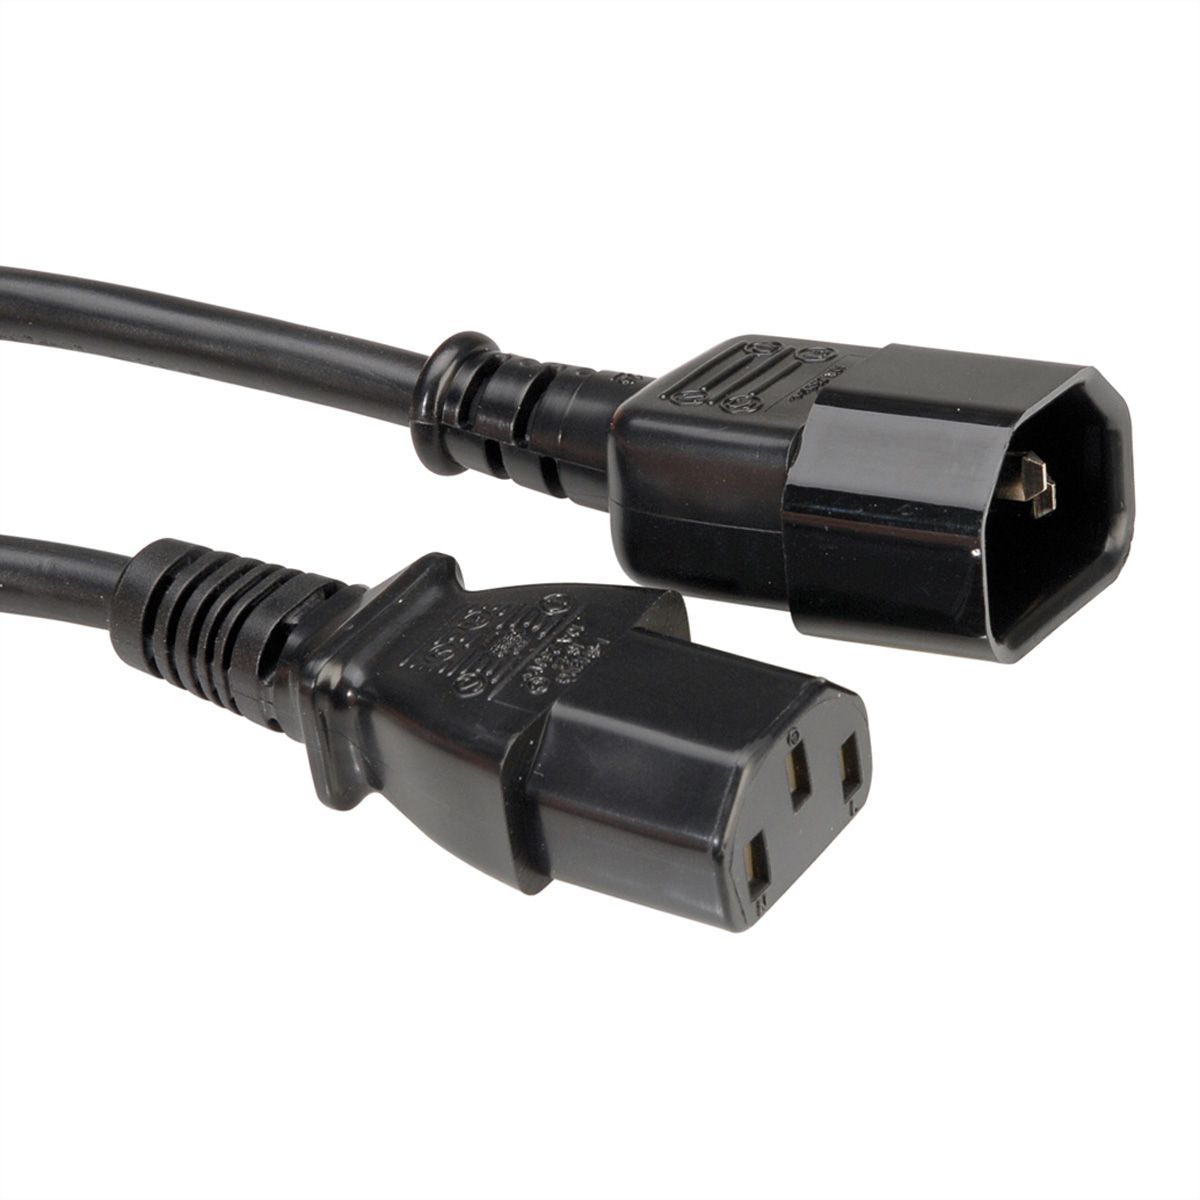 ROLINE Câble d'alimentation, IEC 320 C14 - C13, noir, 1 m - SECOMP France